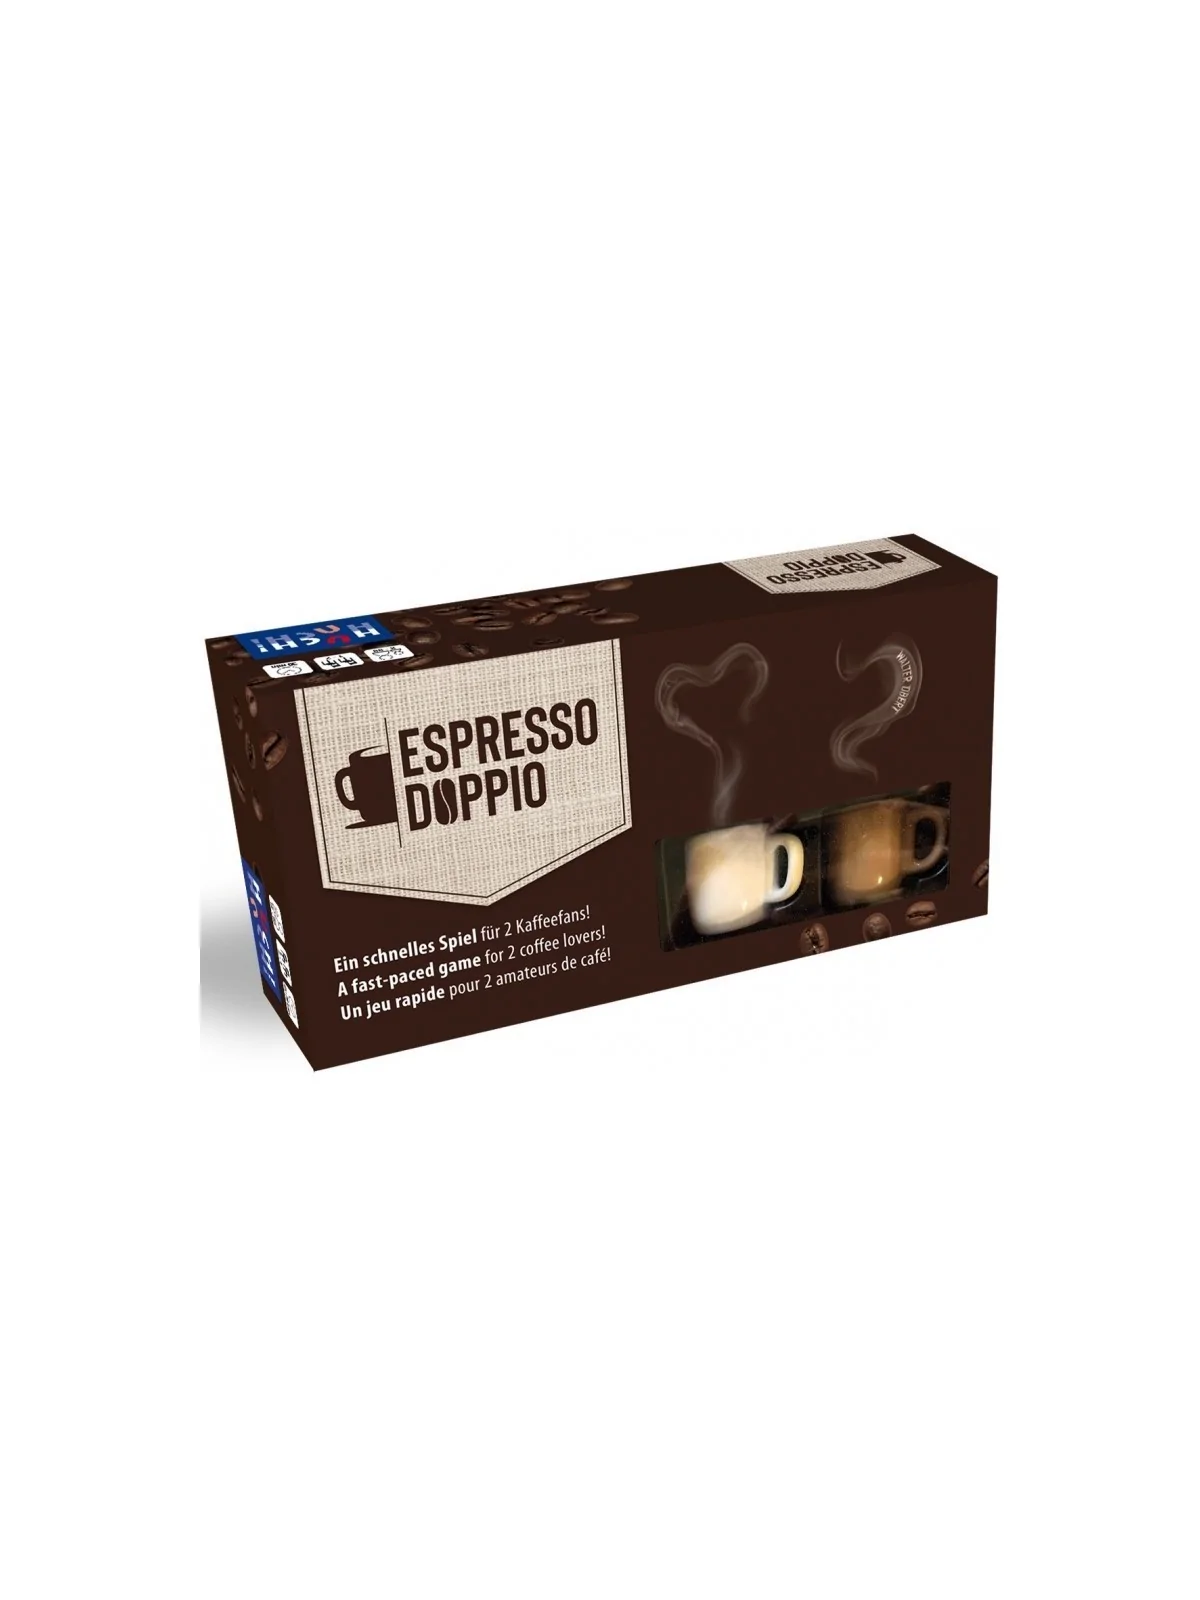 Comprar Espresso Doppio (Inglés) barato al mejor precio 23,36 € de Huc